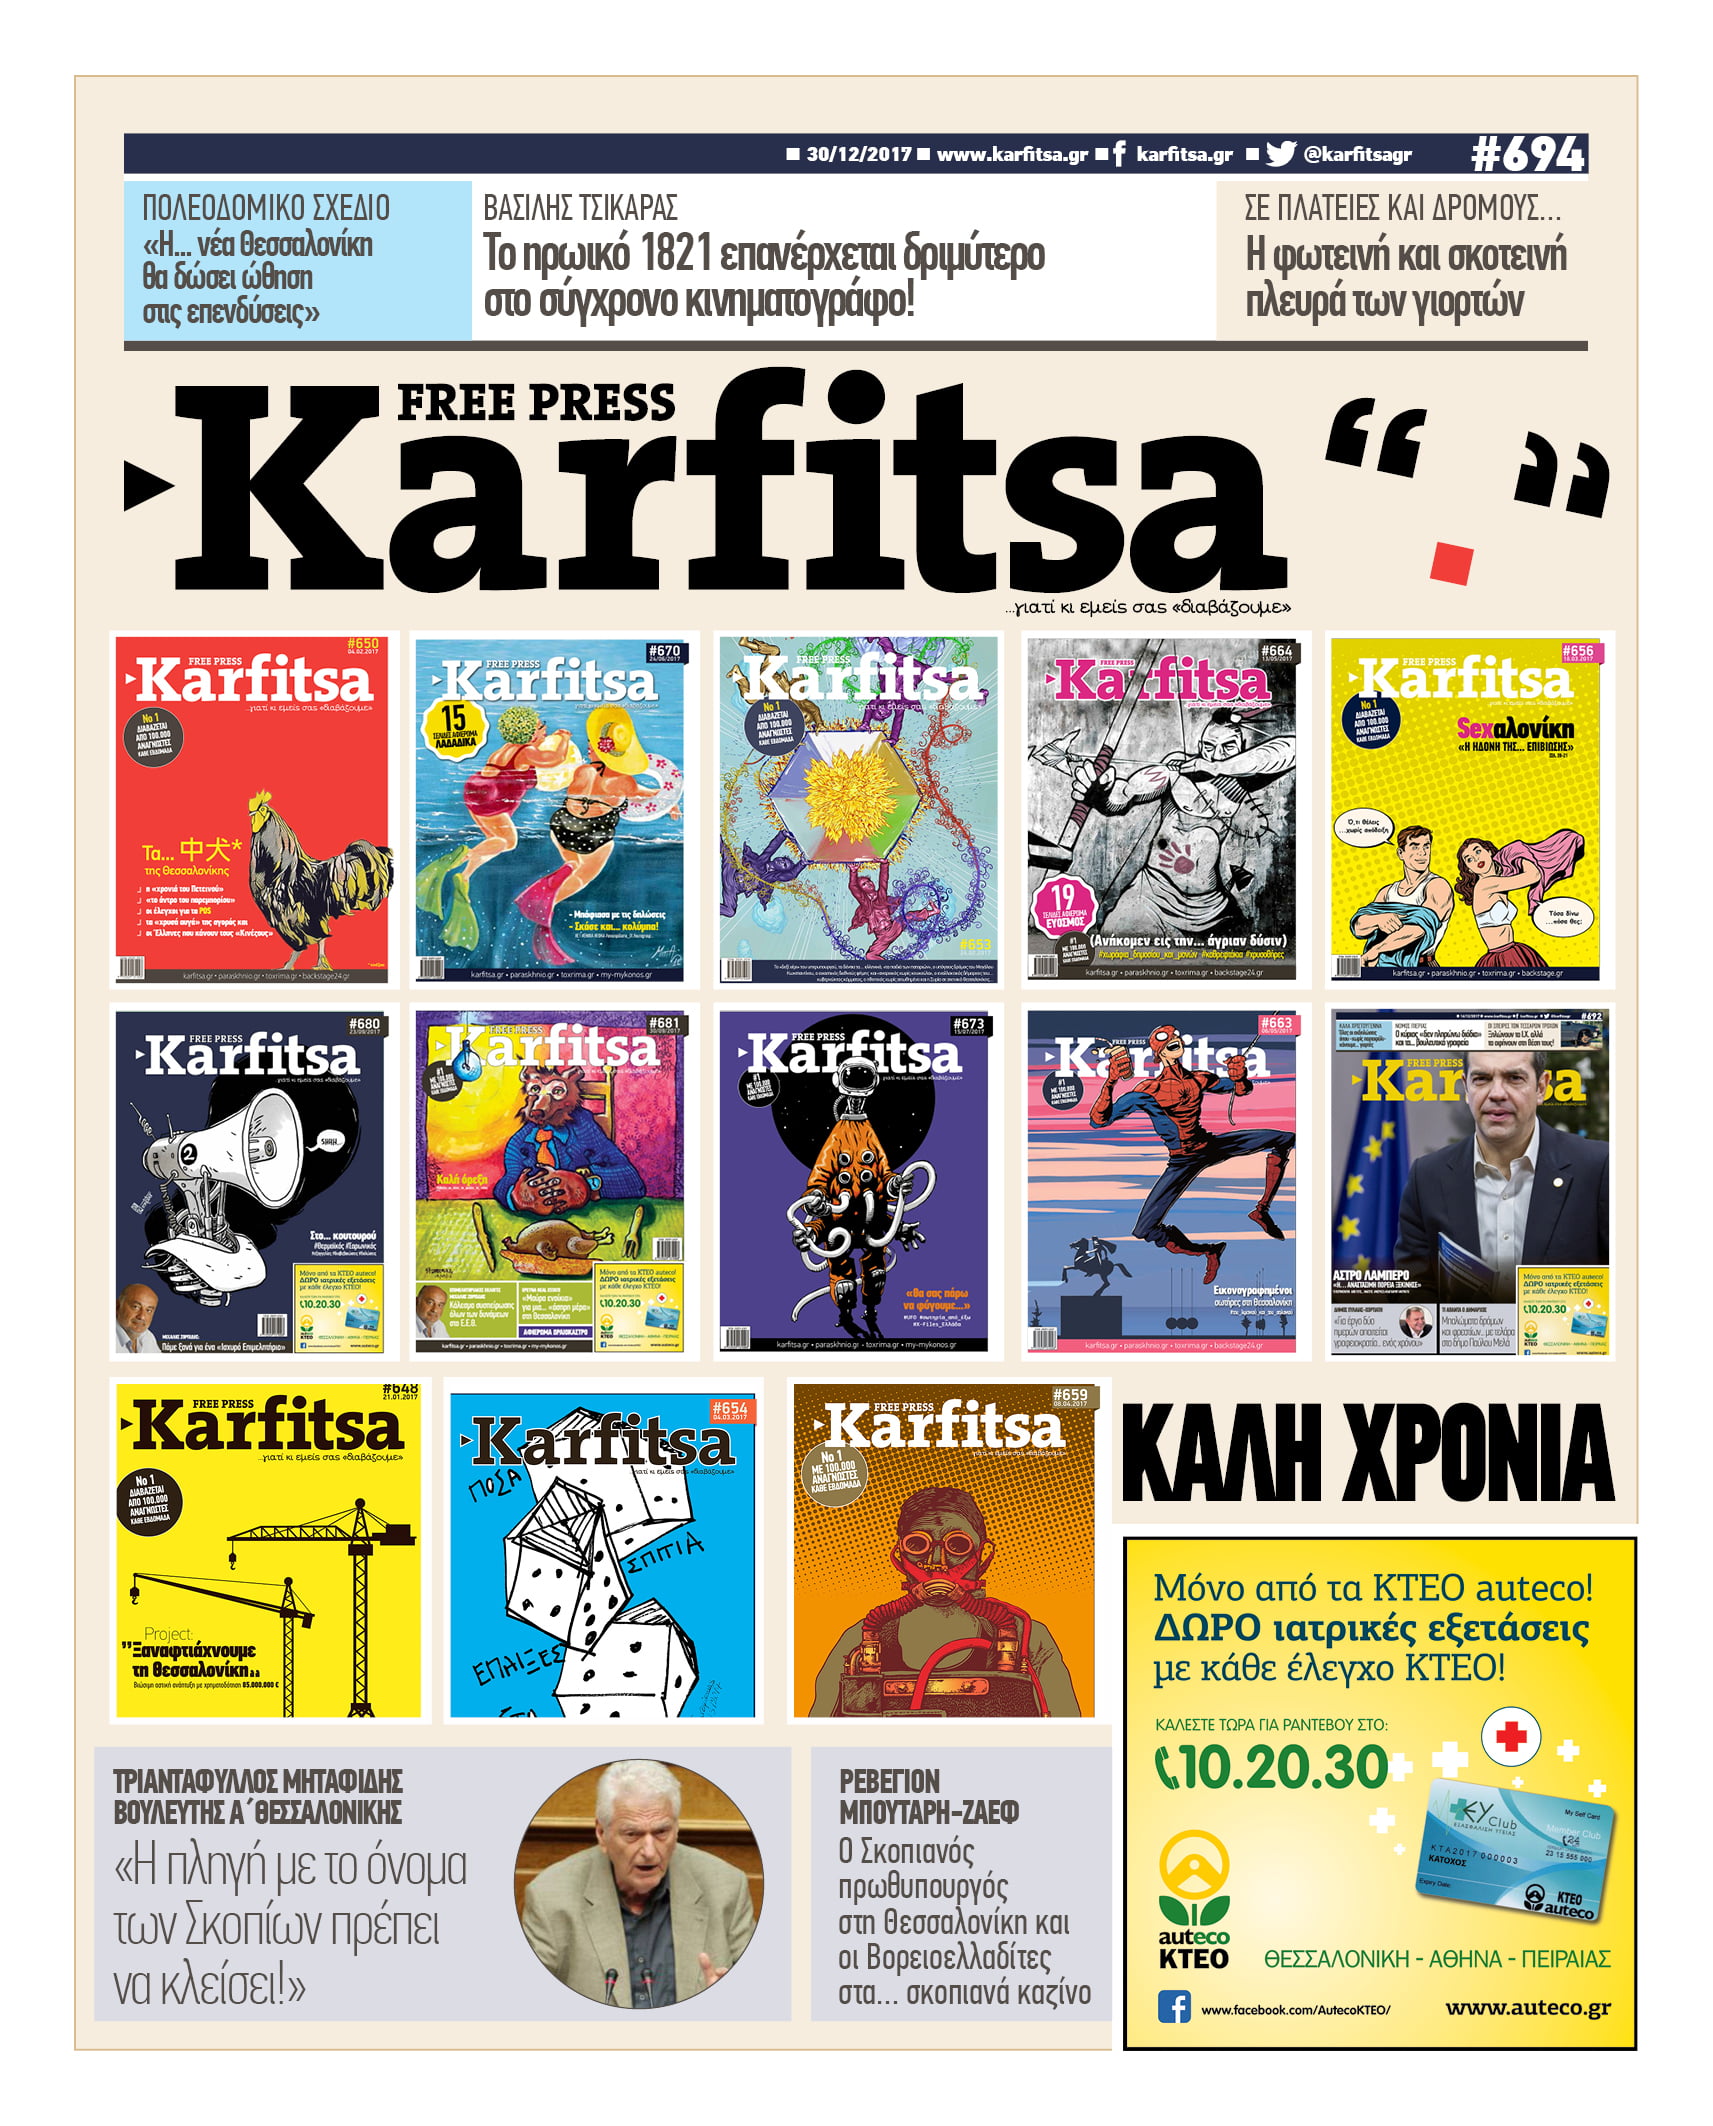 Στη #free_press Karfitsa που κυκλοφορεί…